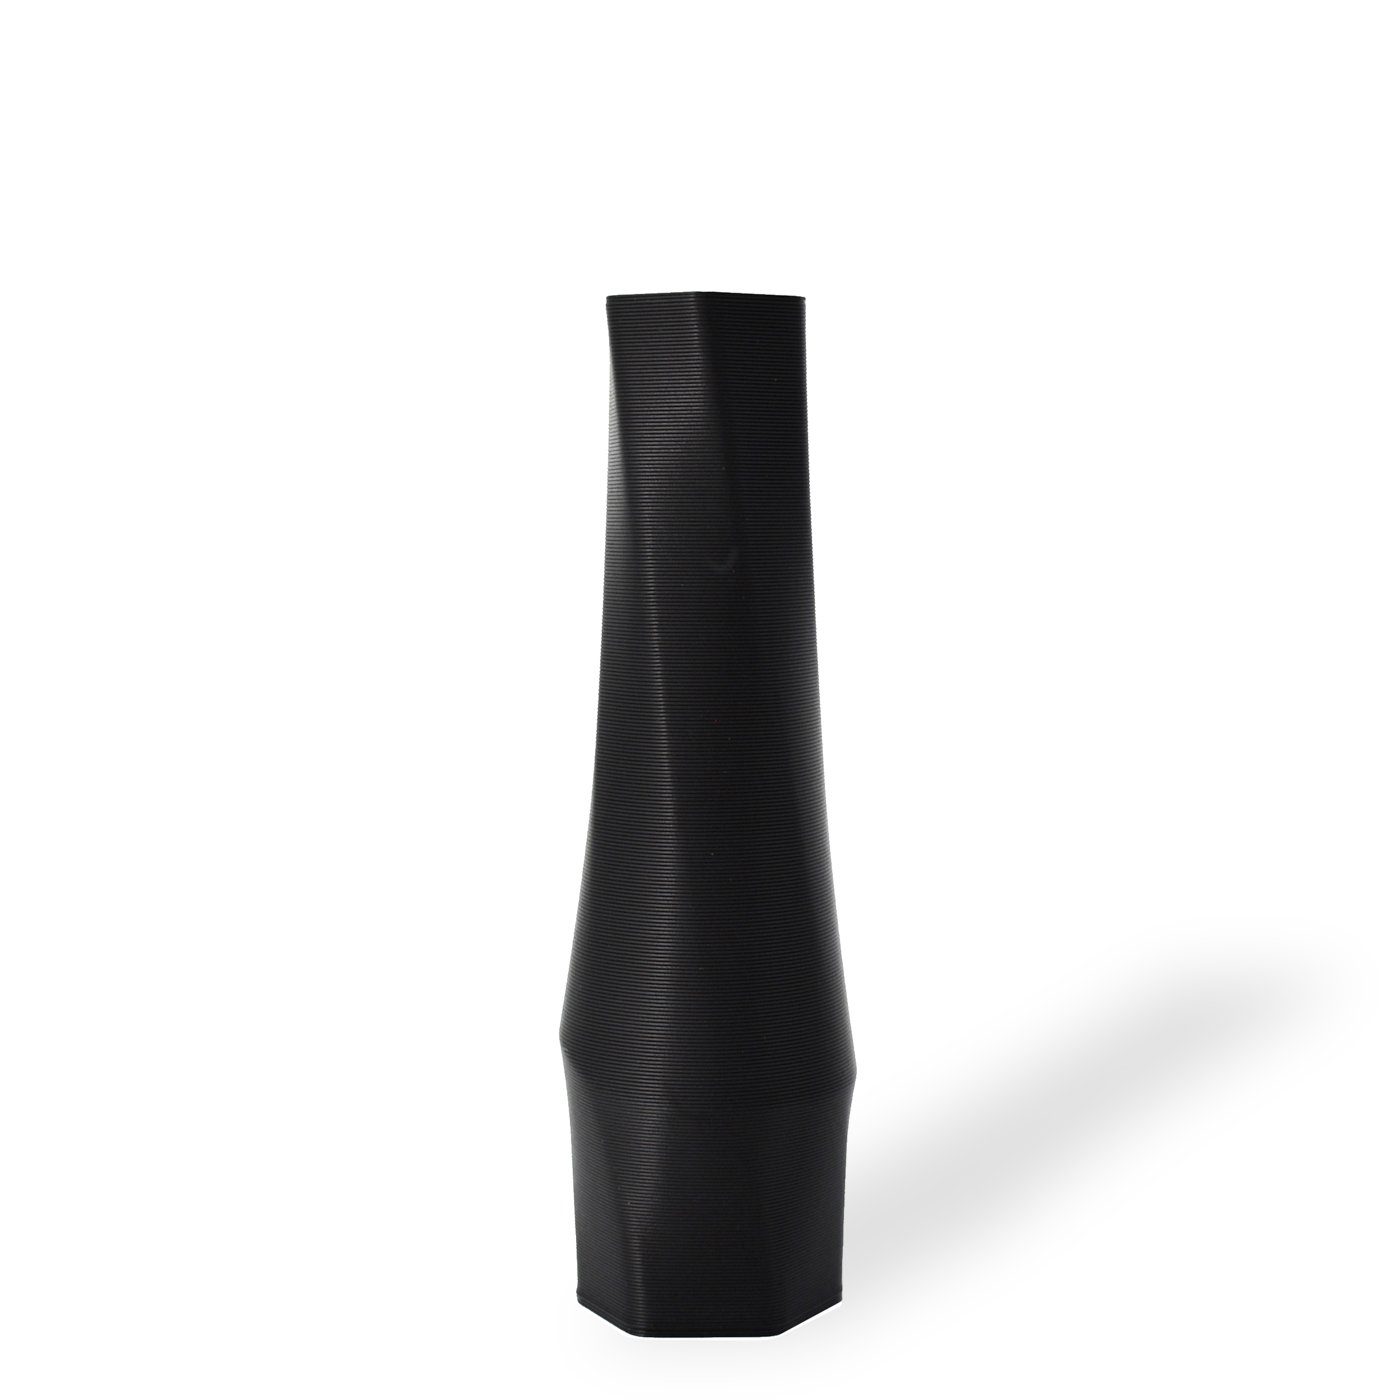 Shapes - Decorations Dekovase the vase - hexagon (basic), 3D Vasen, viele Farben, 100% 3D-Druck (Einzelmodell, 1 Vase), Wasserdicht; Leichte Struktur innerhalb des Materials (Rillung)